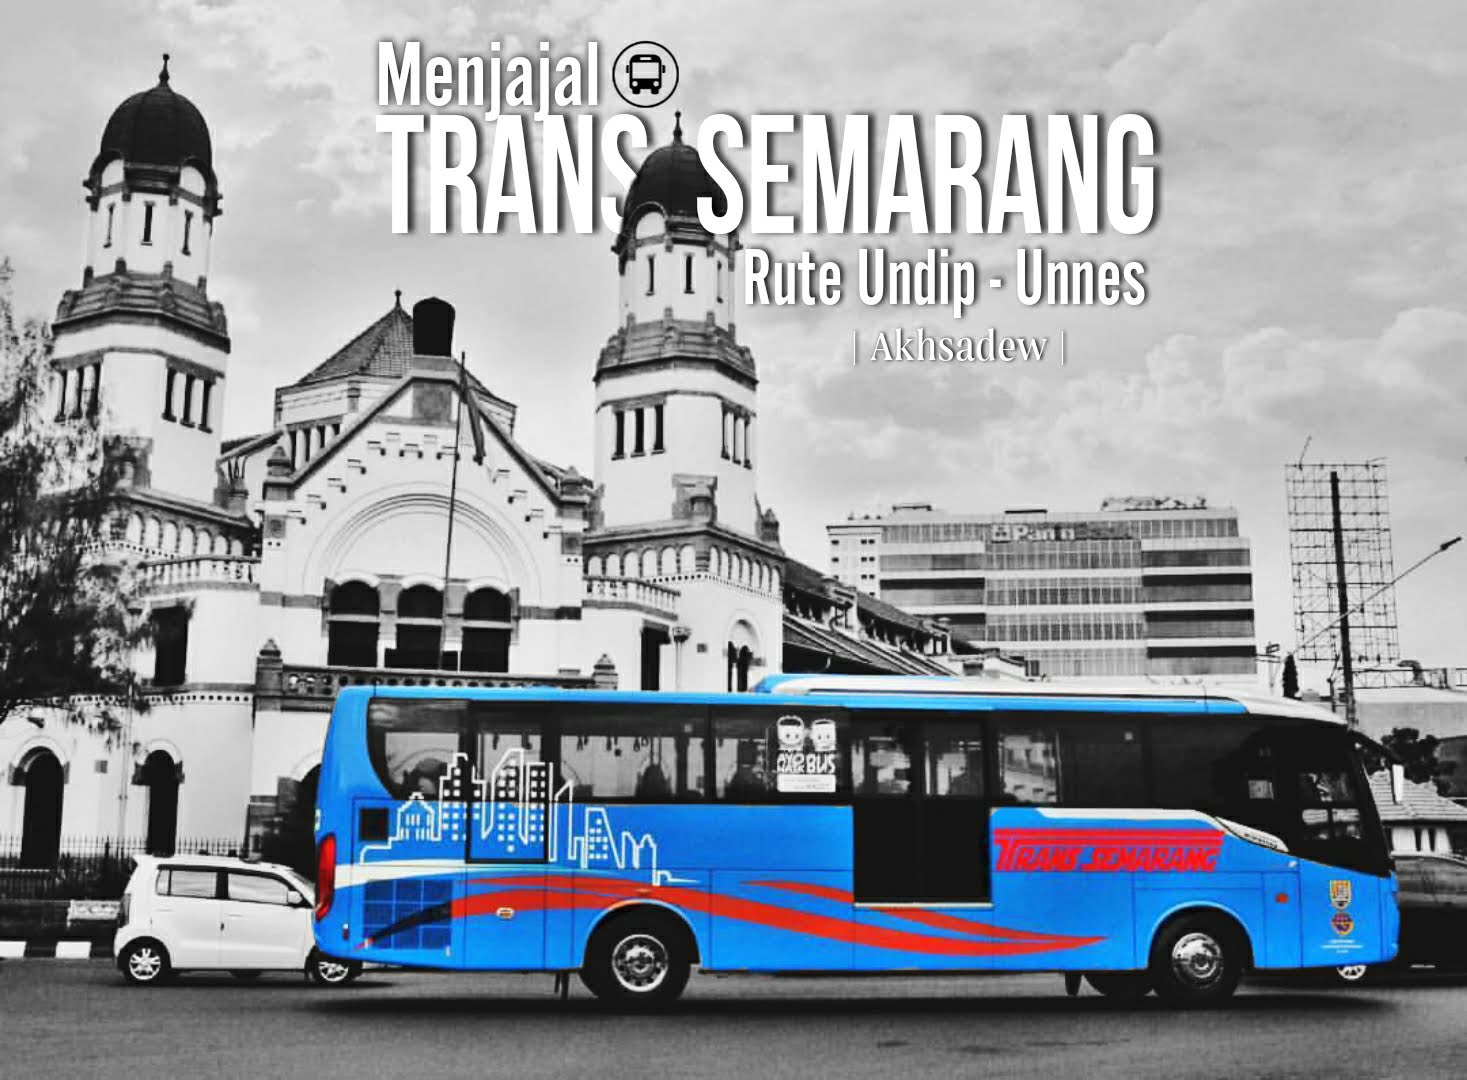 Persyaratan Masuk Supir Bus Trans Semarang : Perum Damri Buka Lowongan Driver Dan Mekanik Bus ...